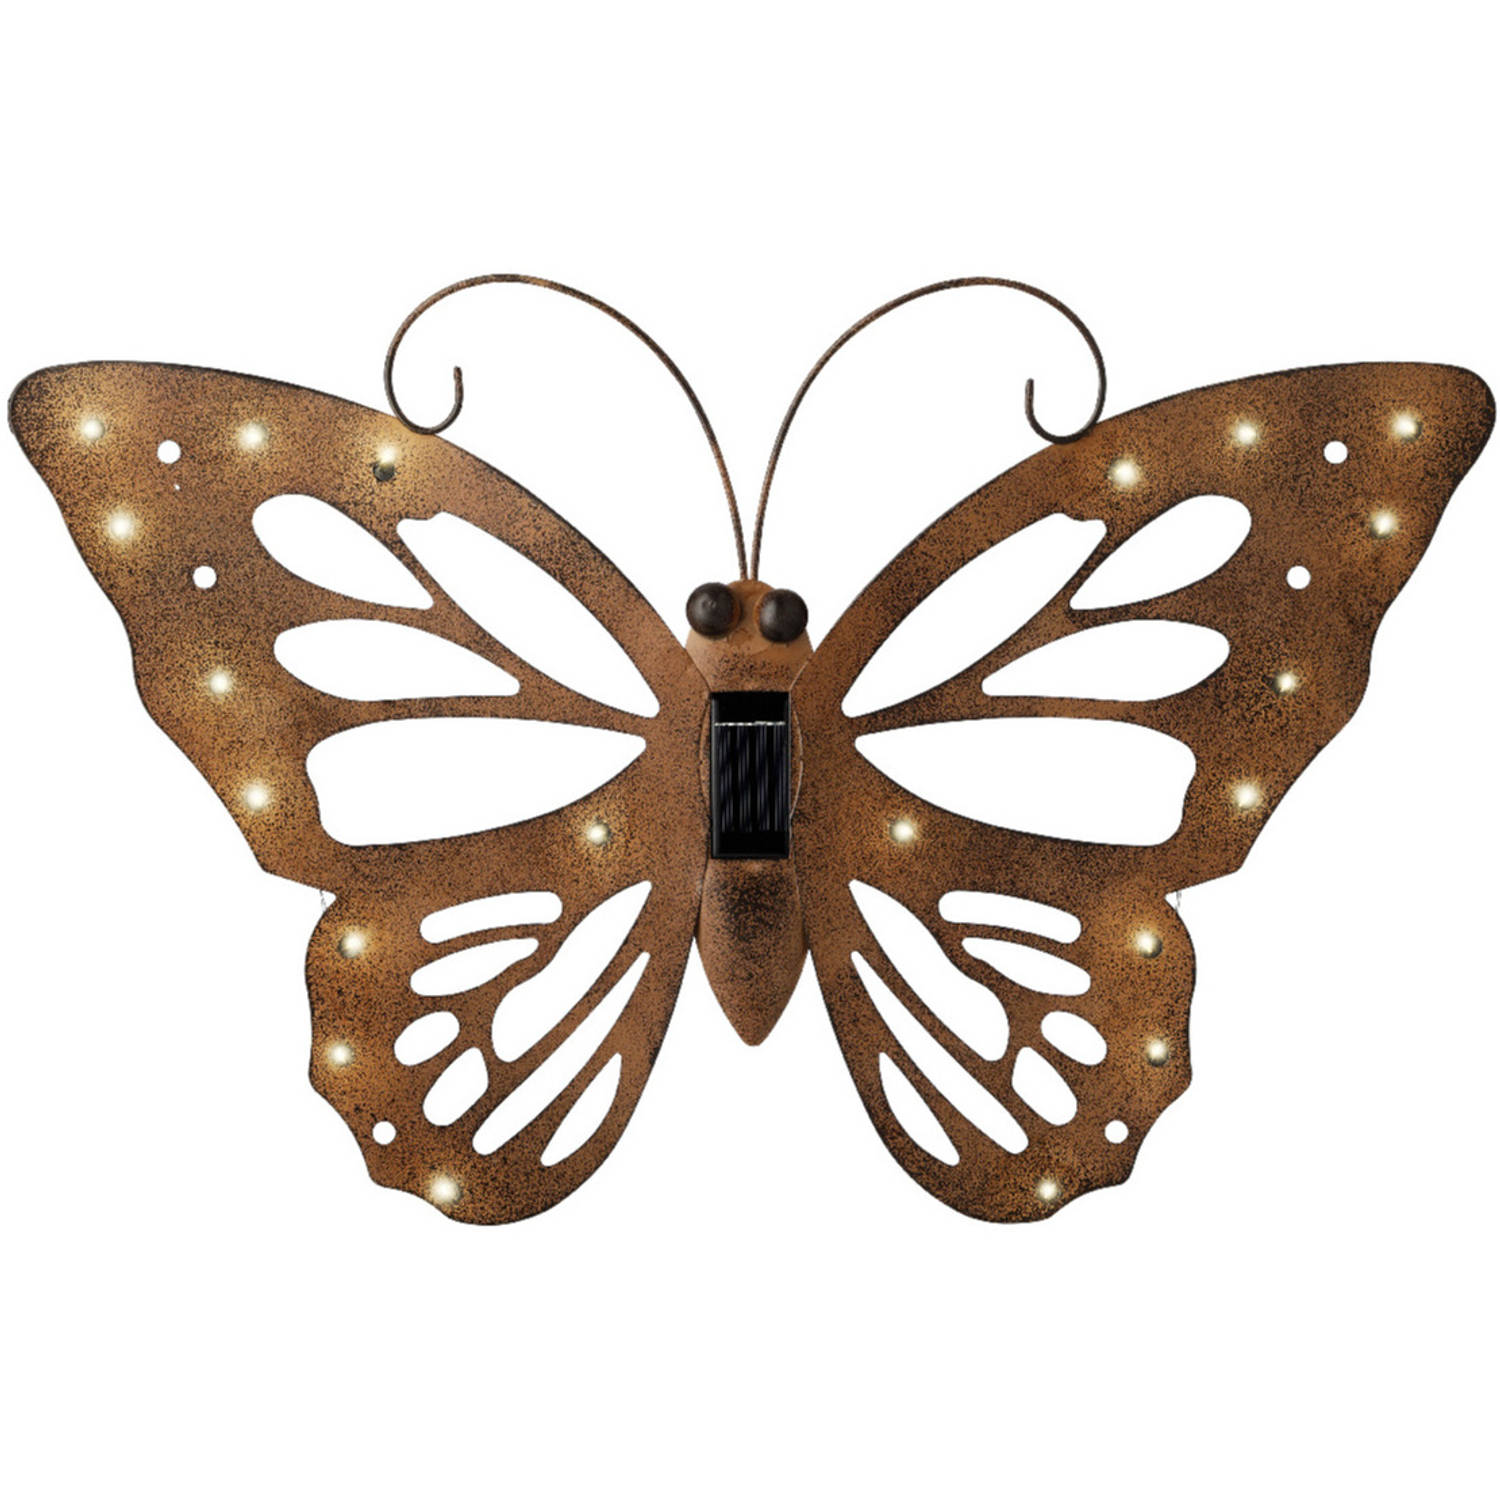 Lumineo tuindecoratie vlinder met solar verlichting - 53 x 35 cm - roestbruin - tuinverlichting